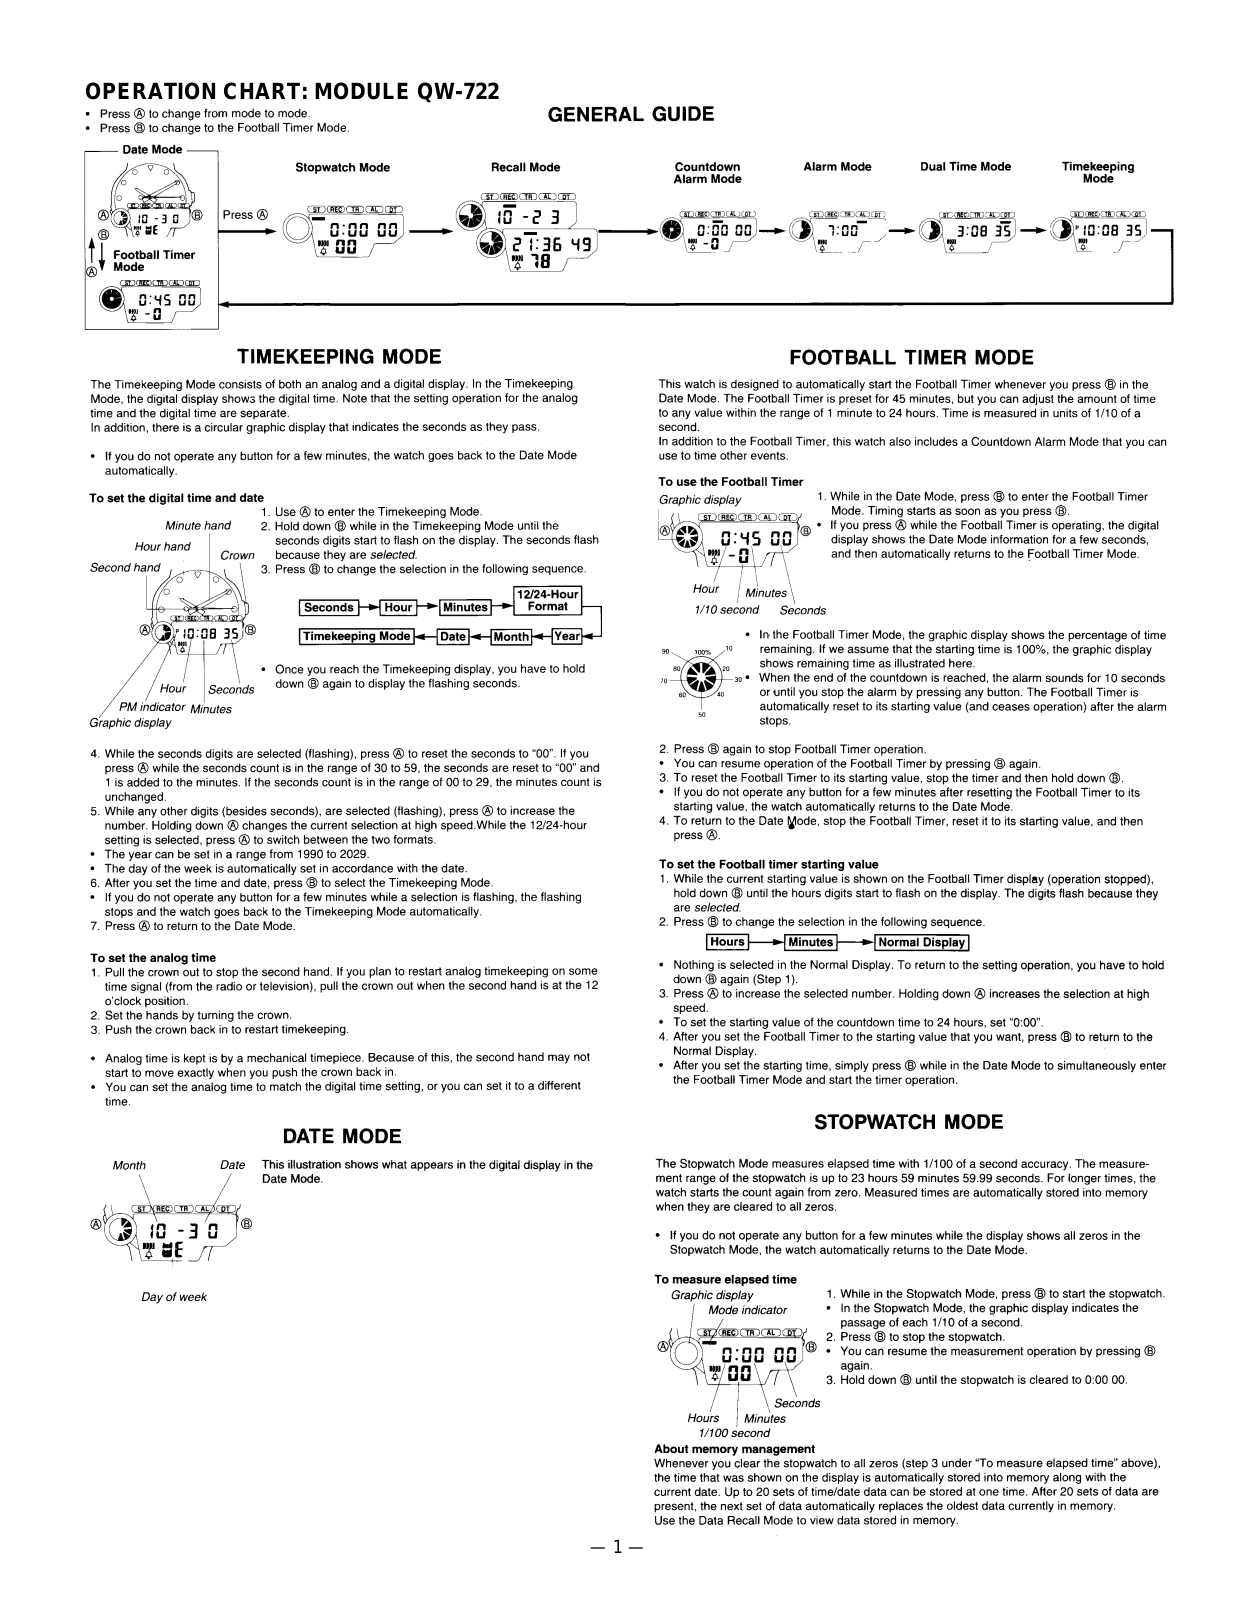 Casio 722 Owner's Manual